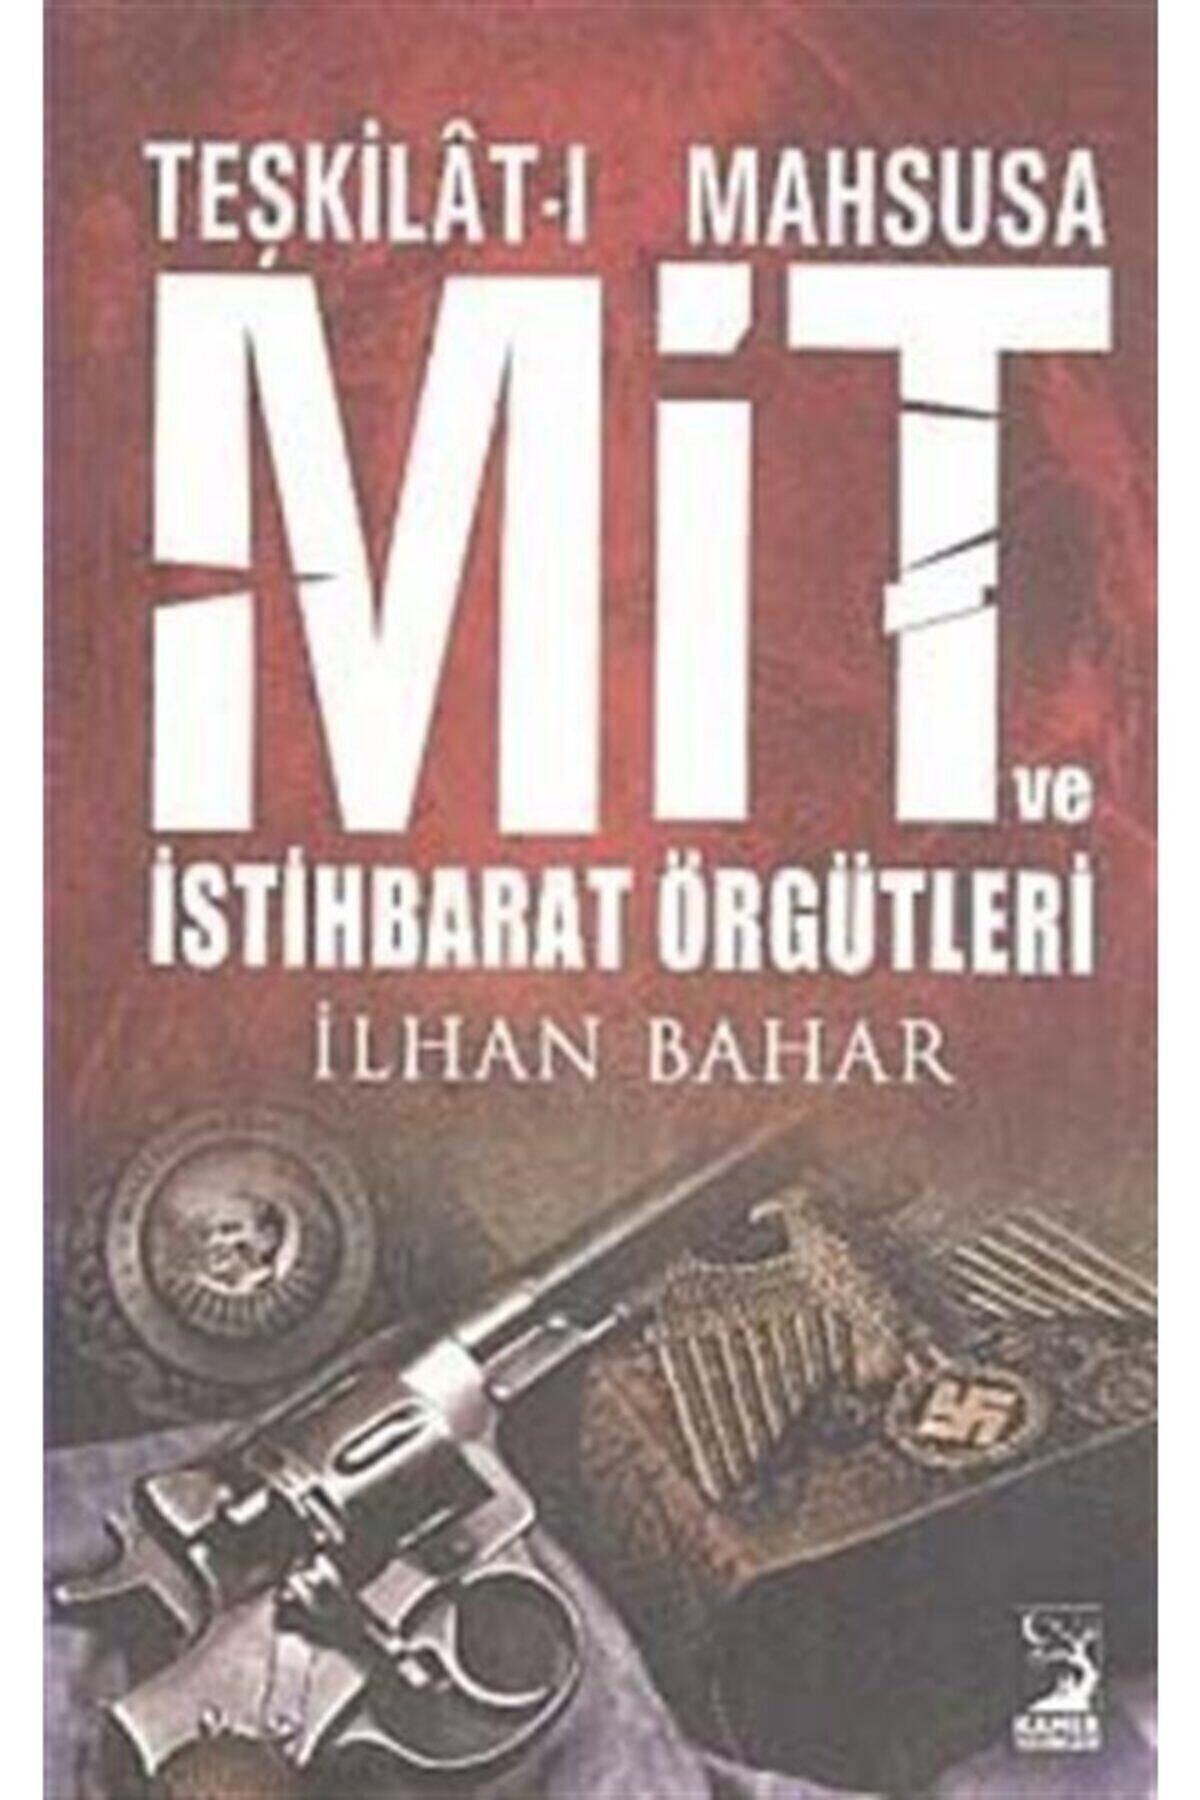 Kamer Yayınları Teşkilat-ı Mahsusa Mit Ve Istihbarat Örgütleri - - Ilhan Bahar Kitabı